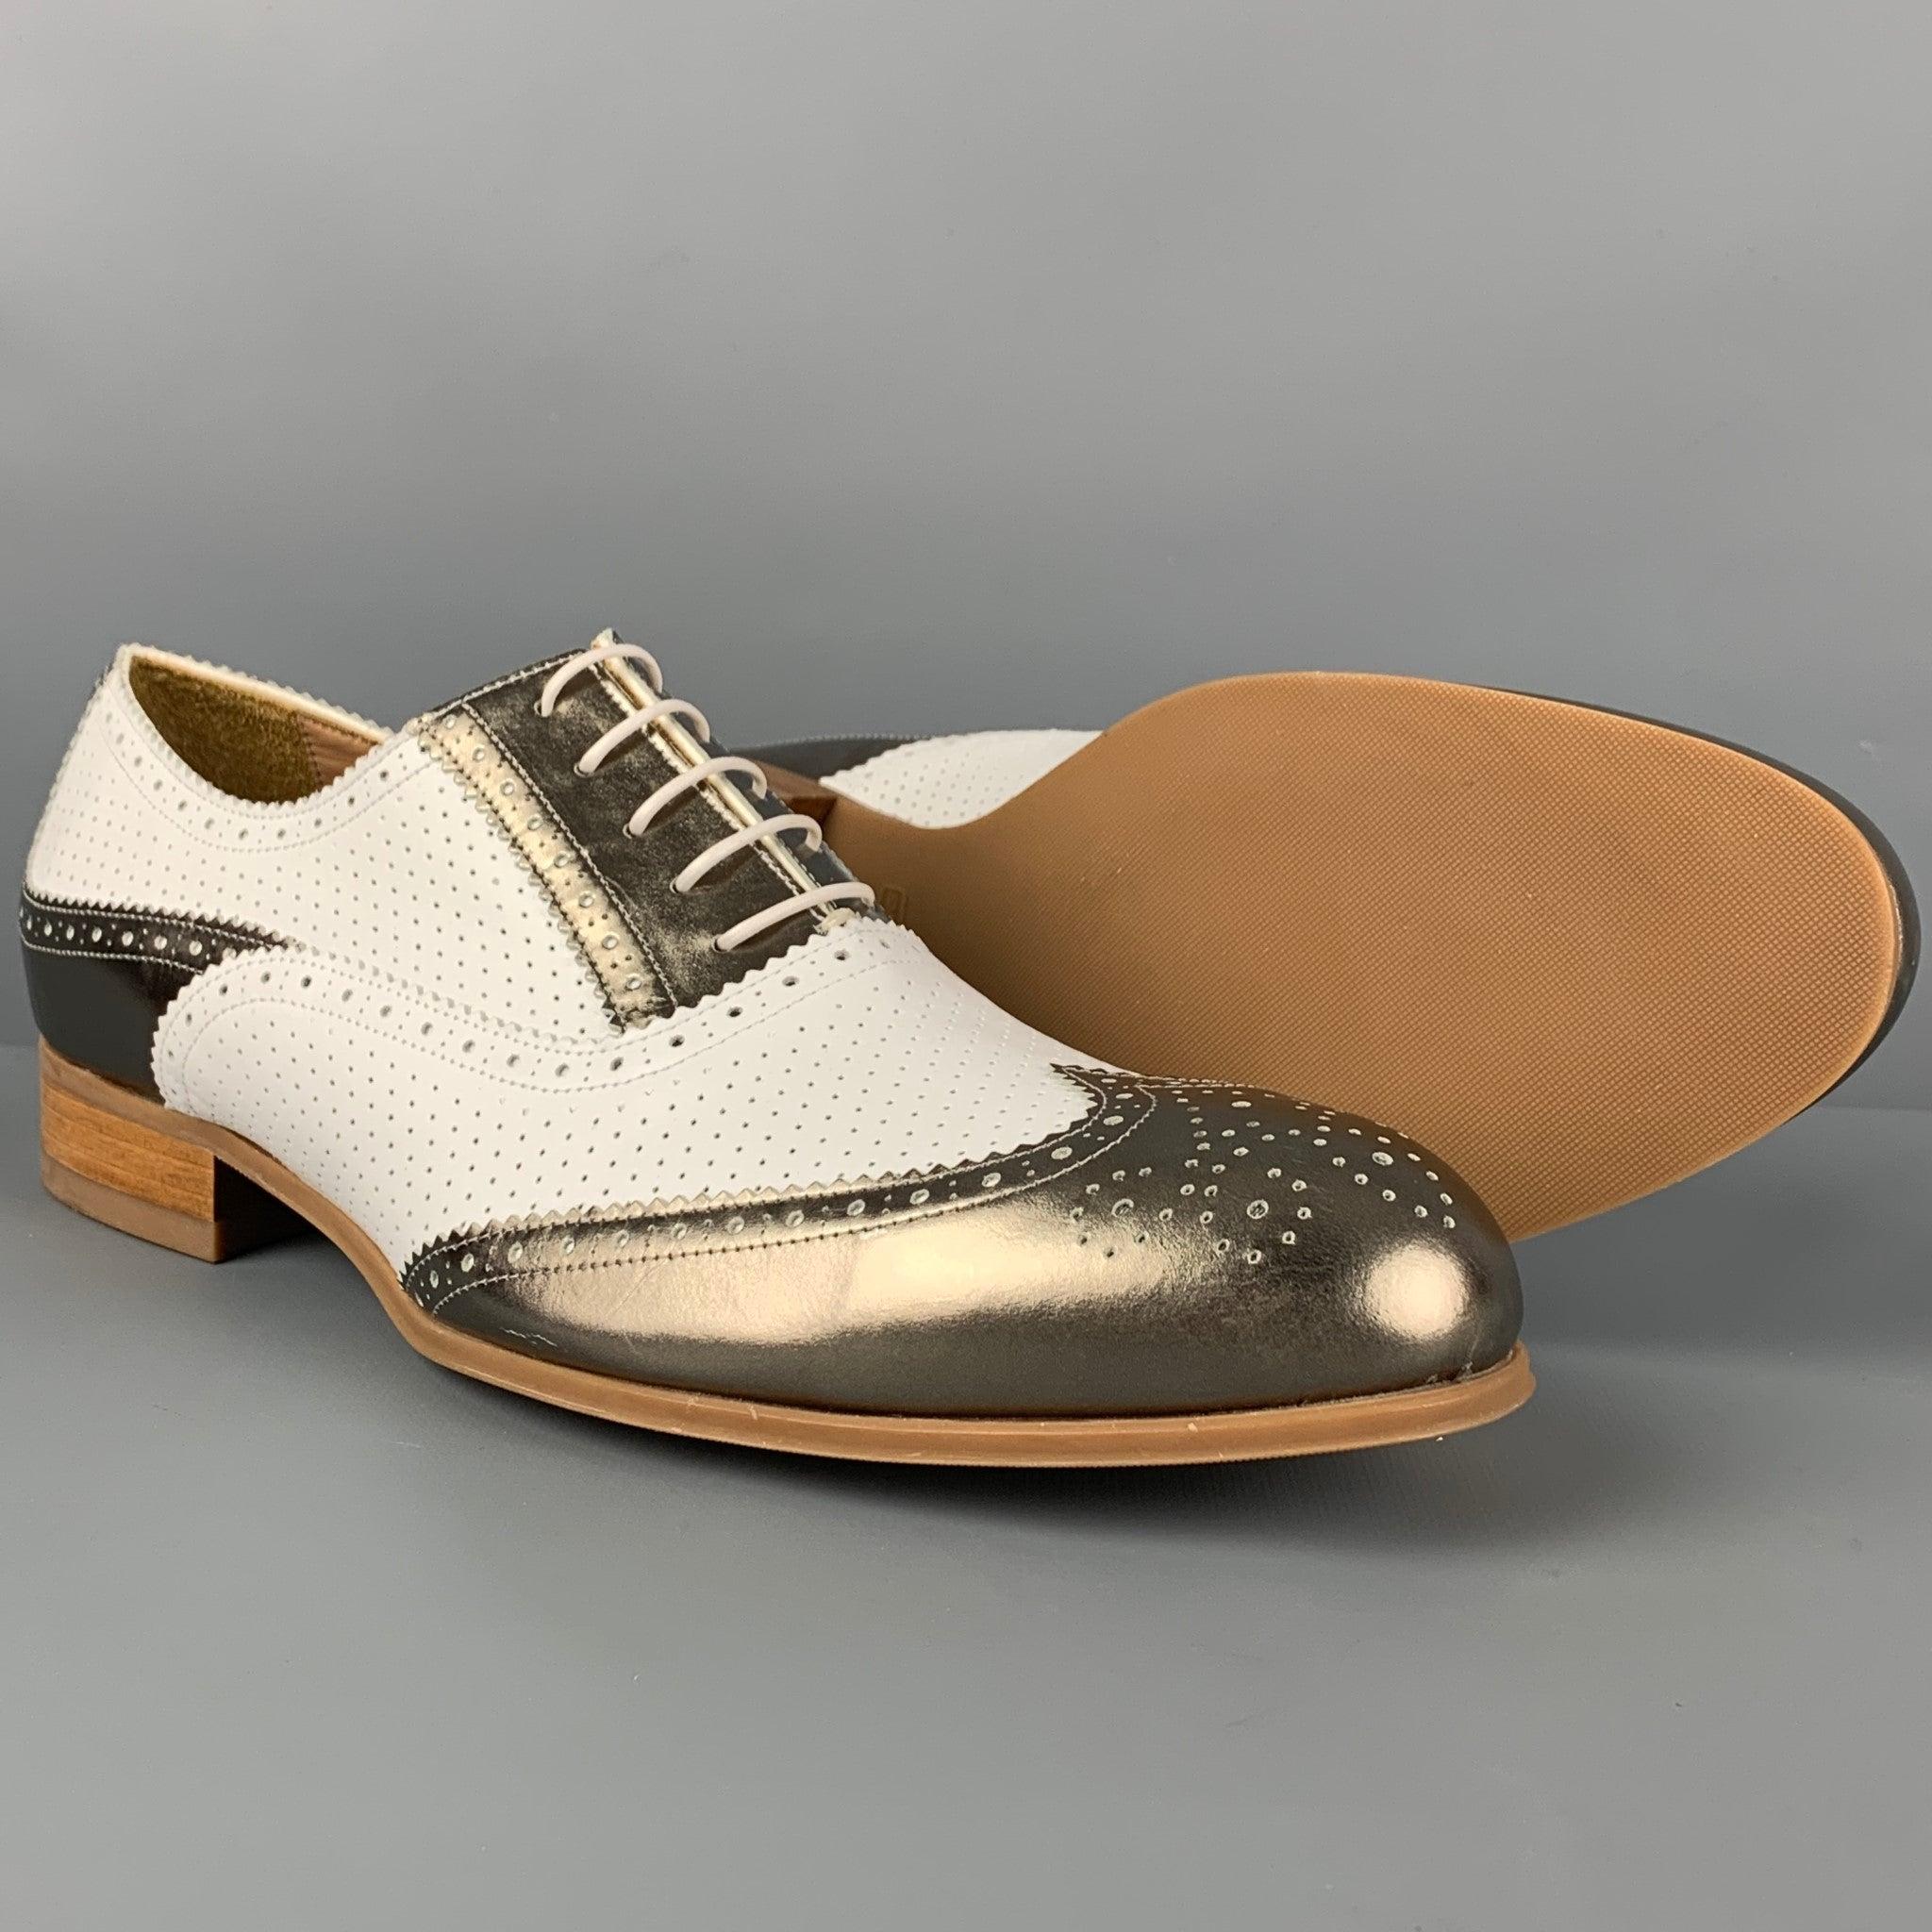 EMPORIO ARMANI - Chaussures Spectator à lacets en cuir perforé blanc métallisé, taille 10 Excellent état à San Francisco, CA